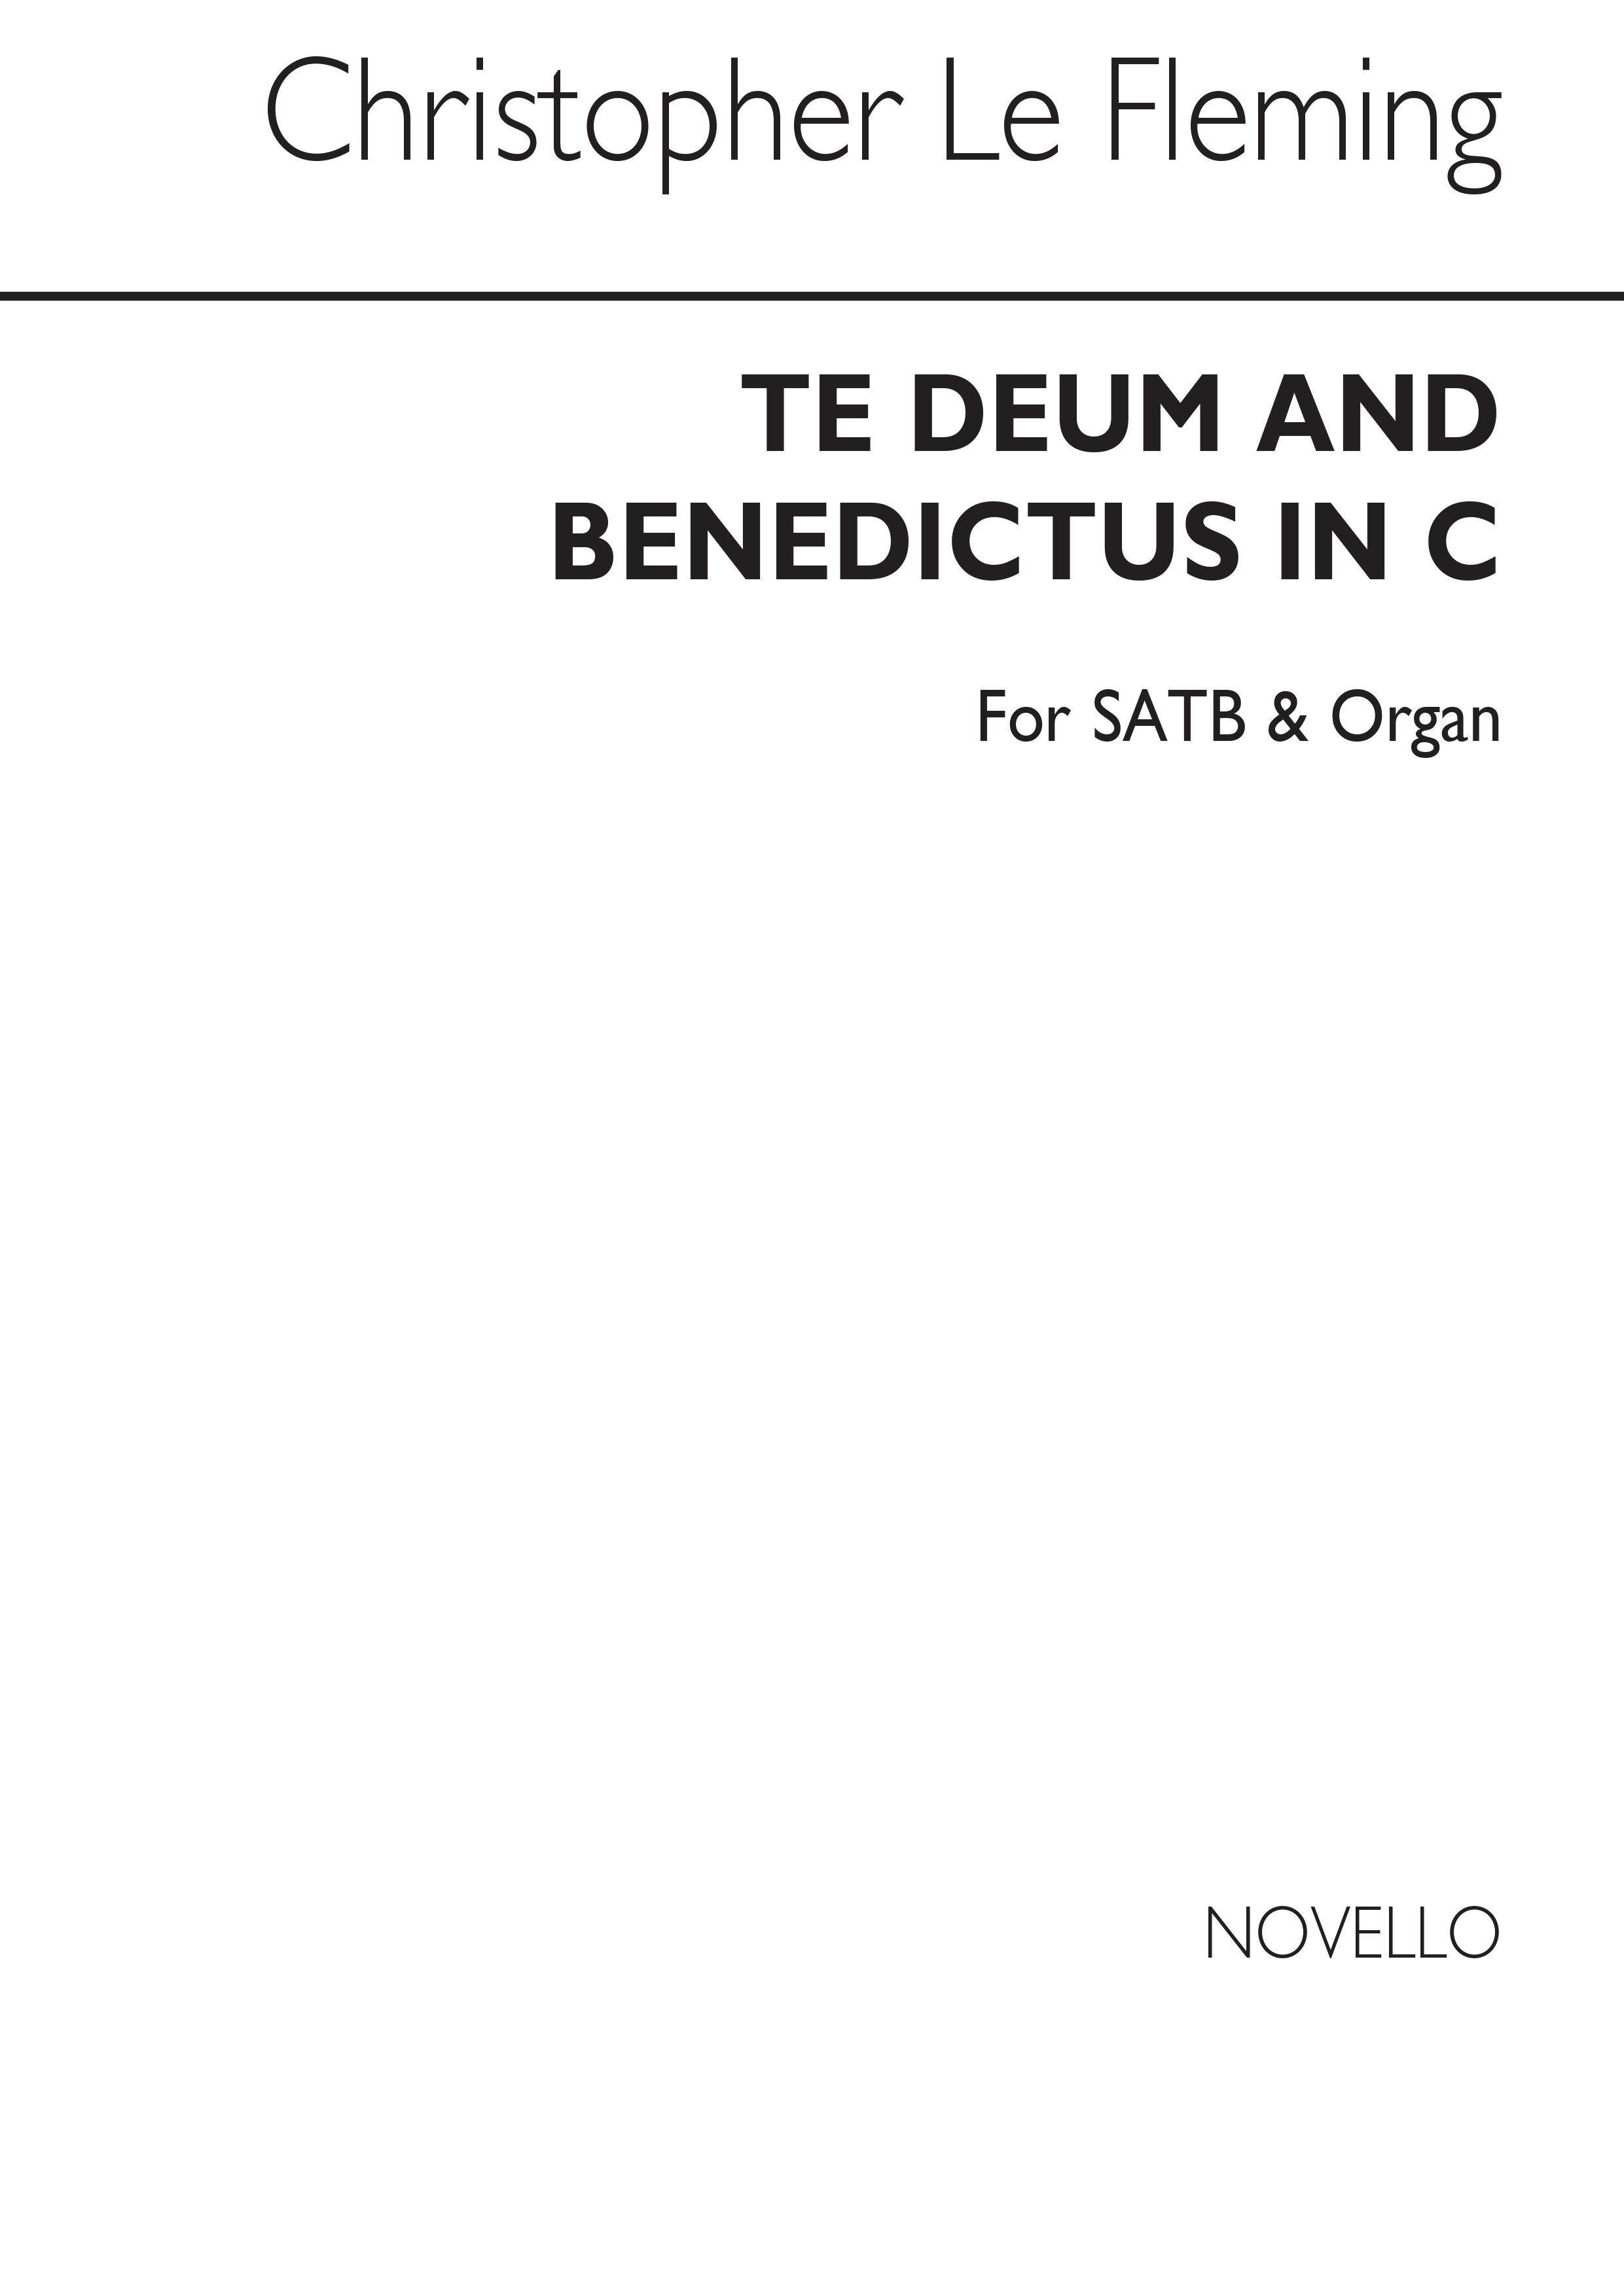 Le Fleming: Te Deum & Benedictus for SATB and Organ